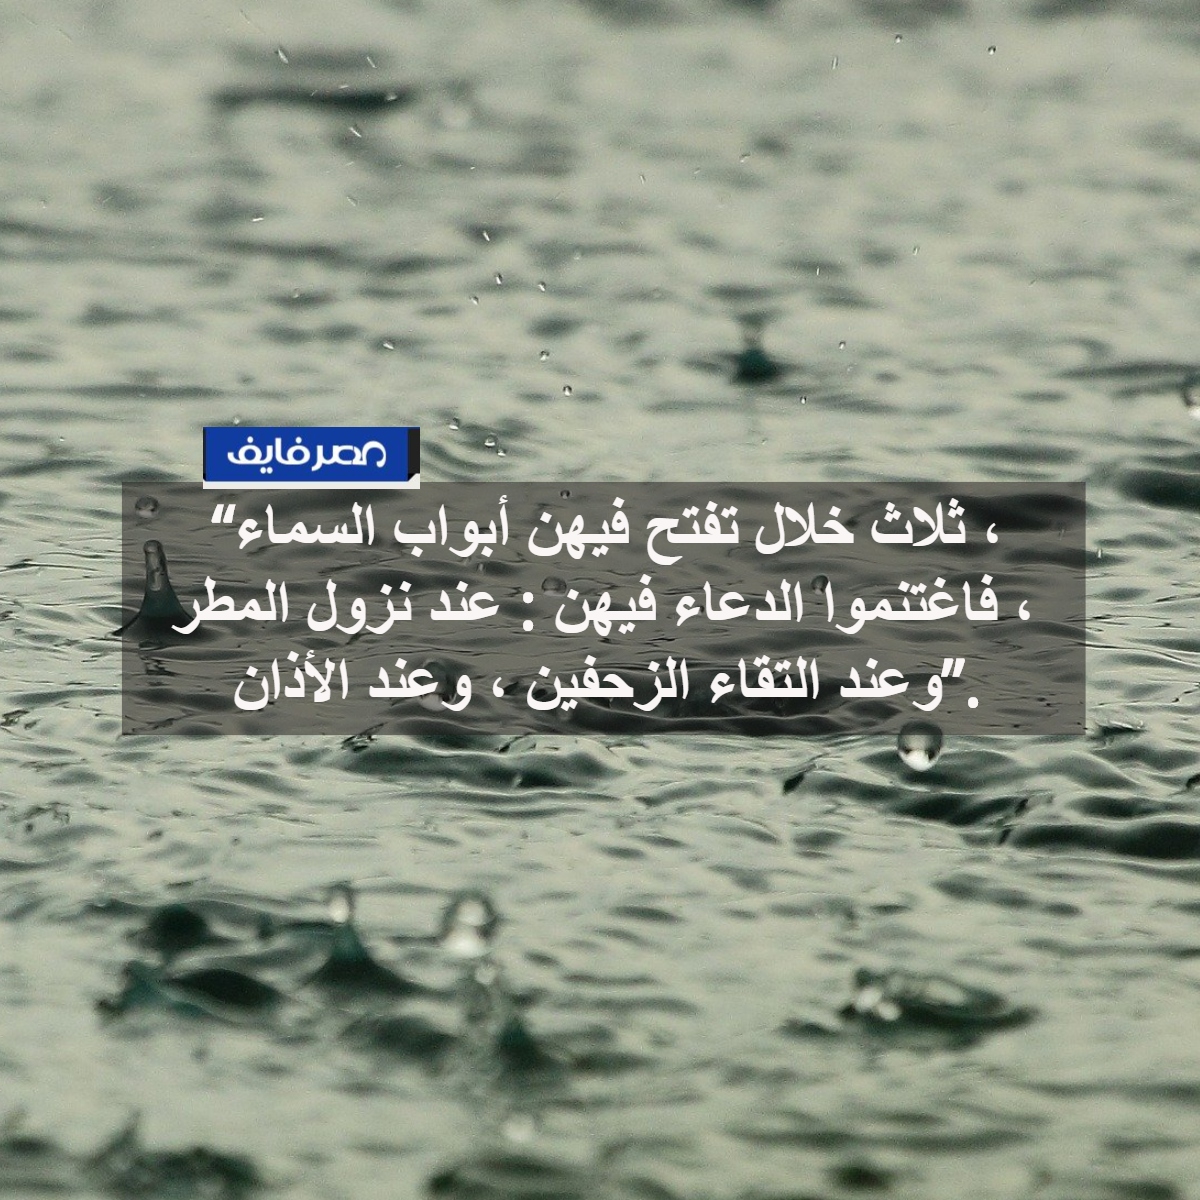 دعاء المطر أدعية مستحبة عند نزول المطر للرزق وللميت وللمريض